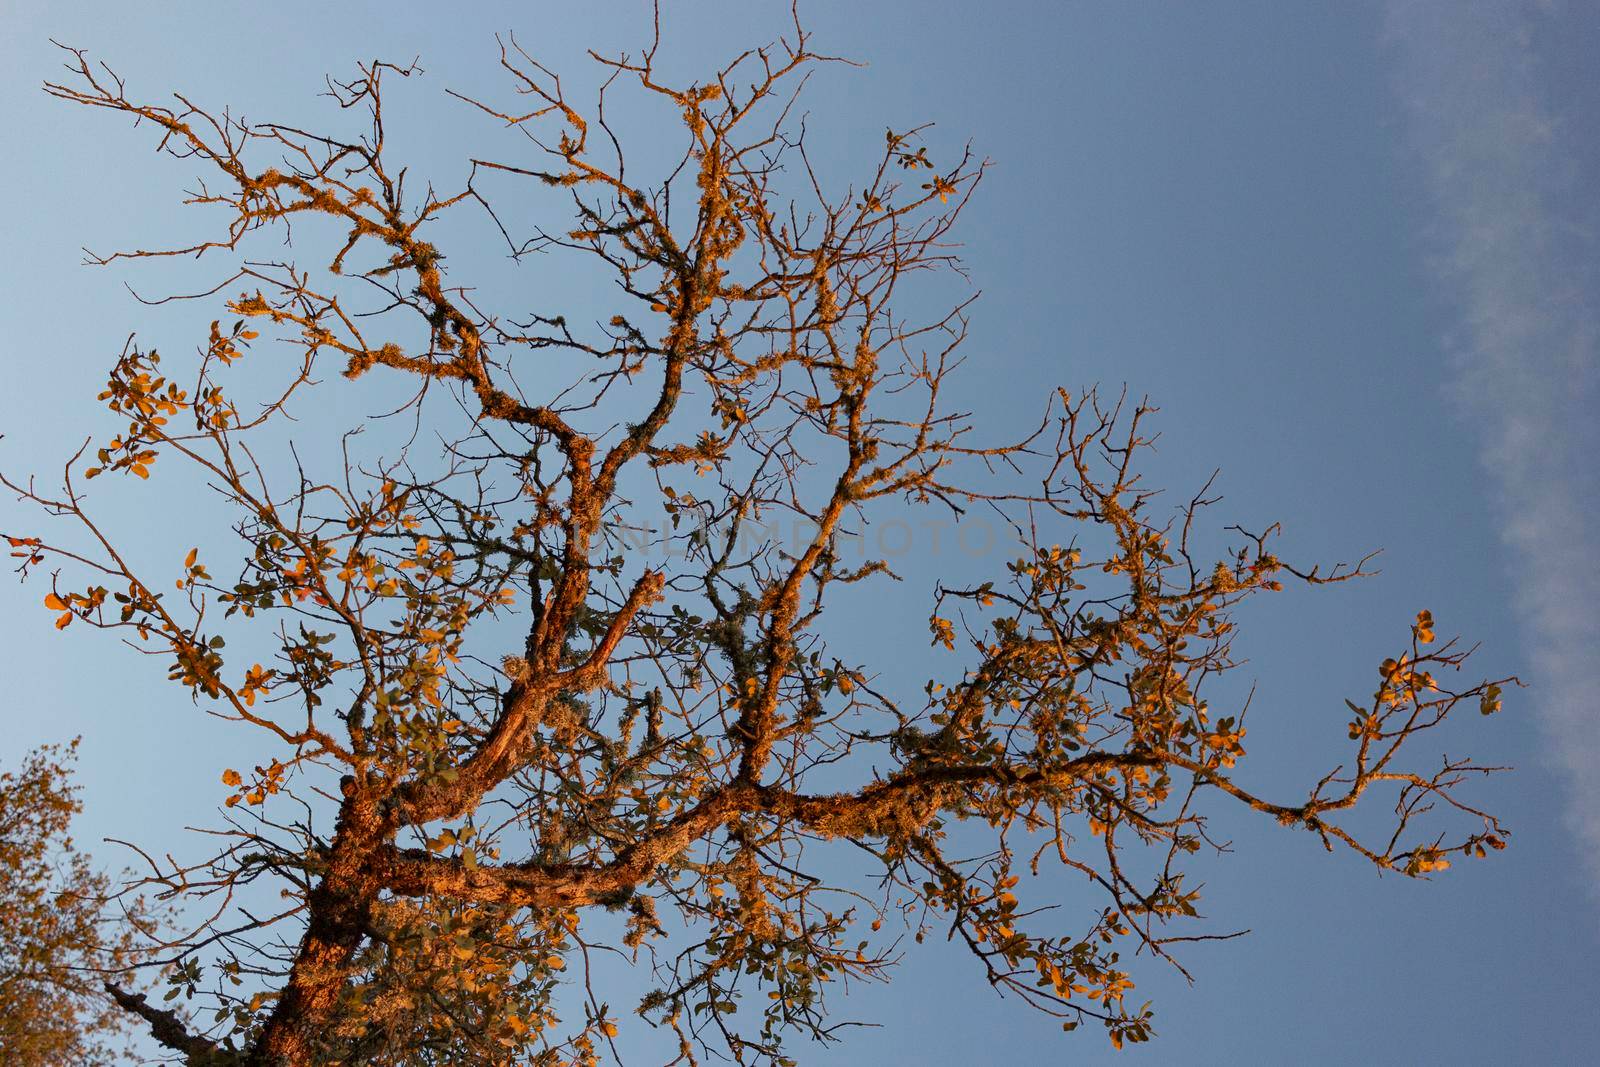 Dead acorn tree in a field of a village in Spain by loopneo